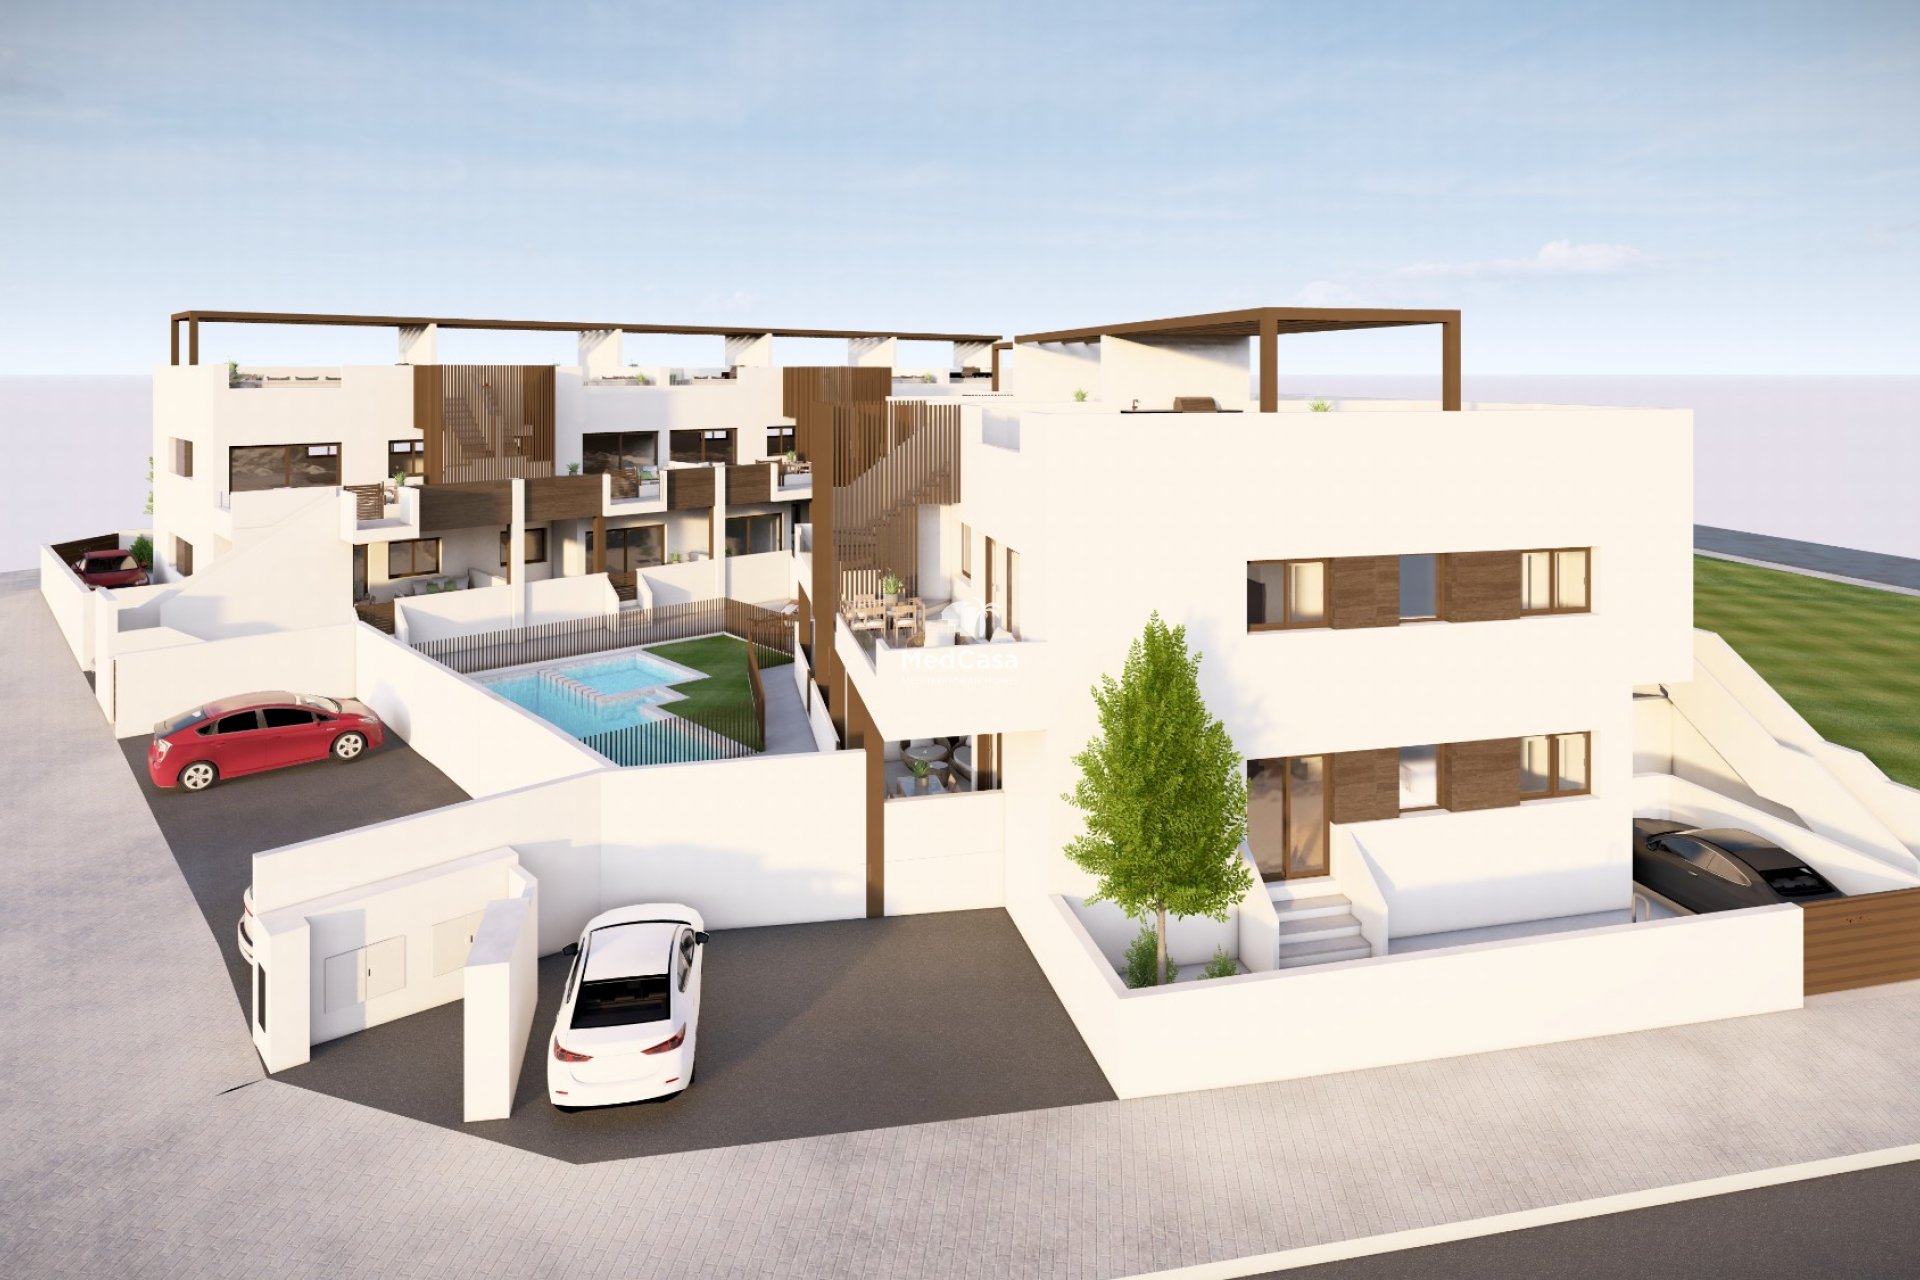 Pequeño complejo residencial tipo bungalow, amplias terrazas y piscina comunitaria